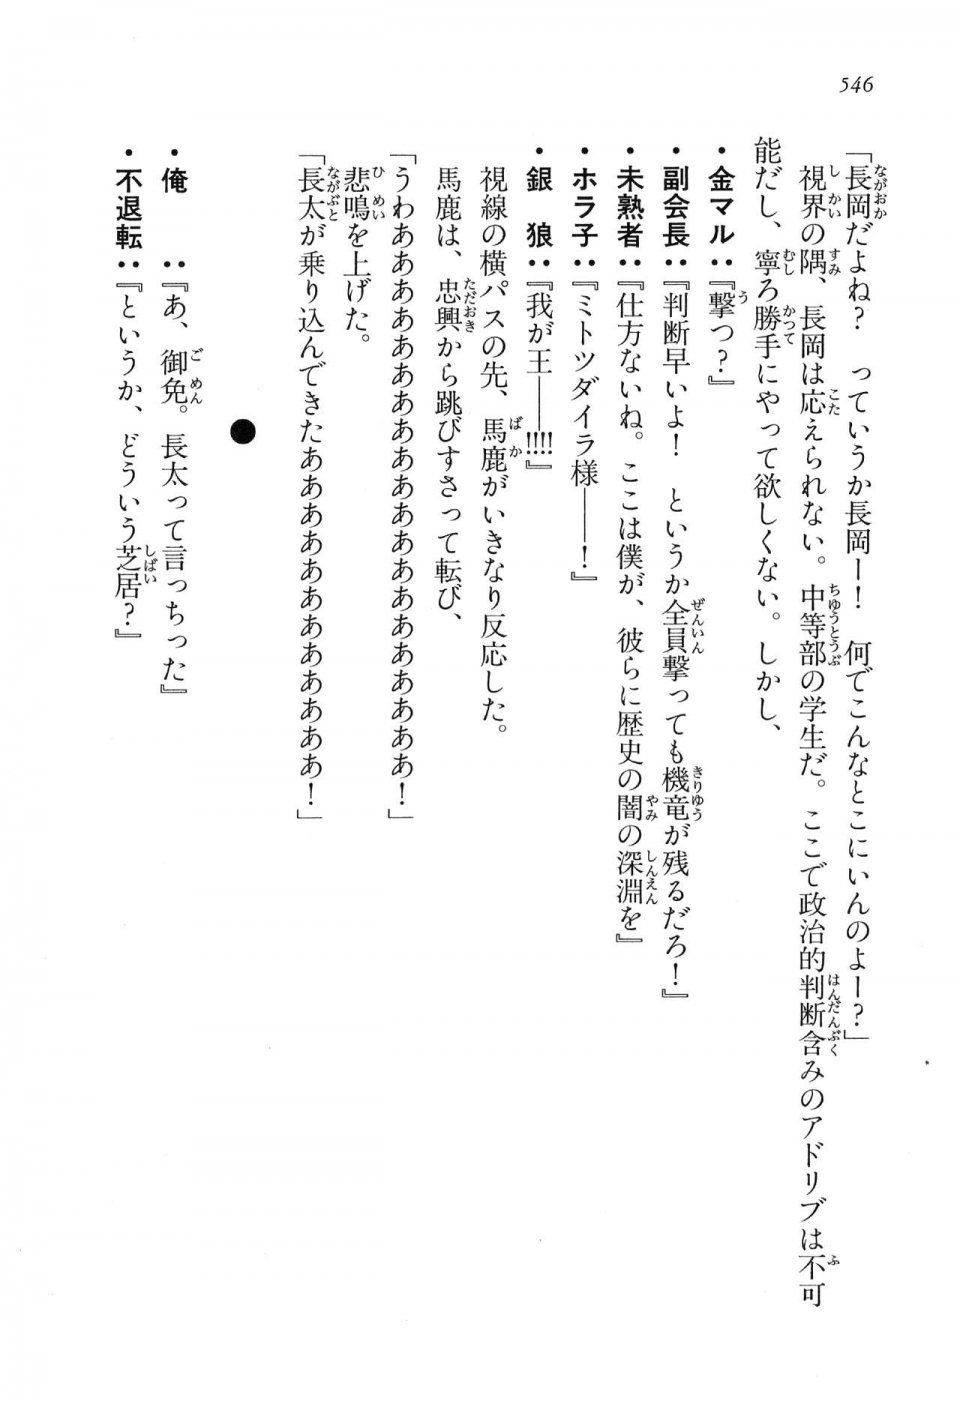 Kyoukai Senjou no Horizon LN Vol 16(7A) - Photo #546